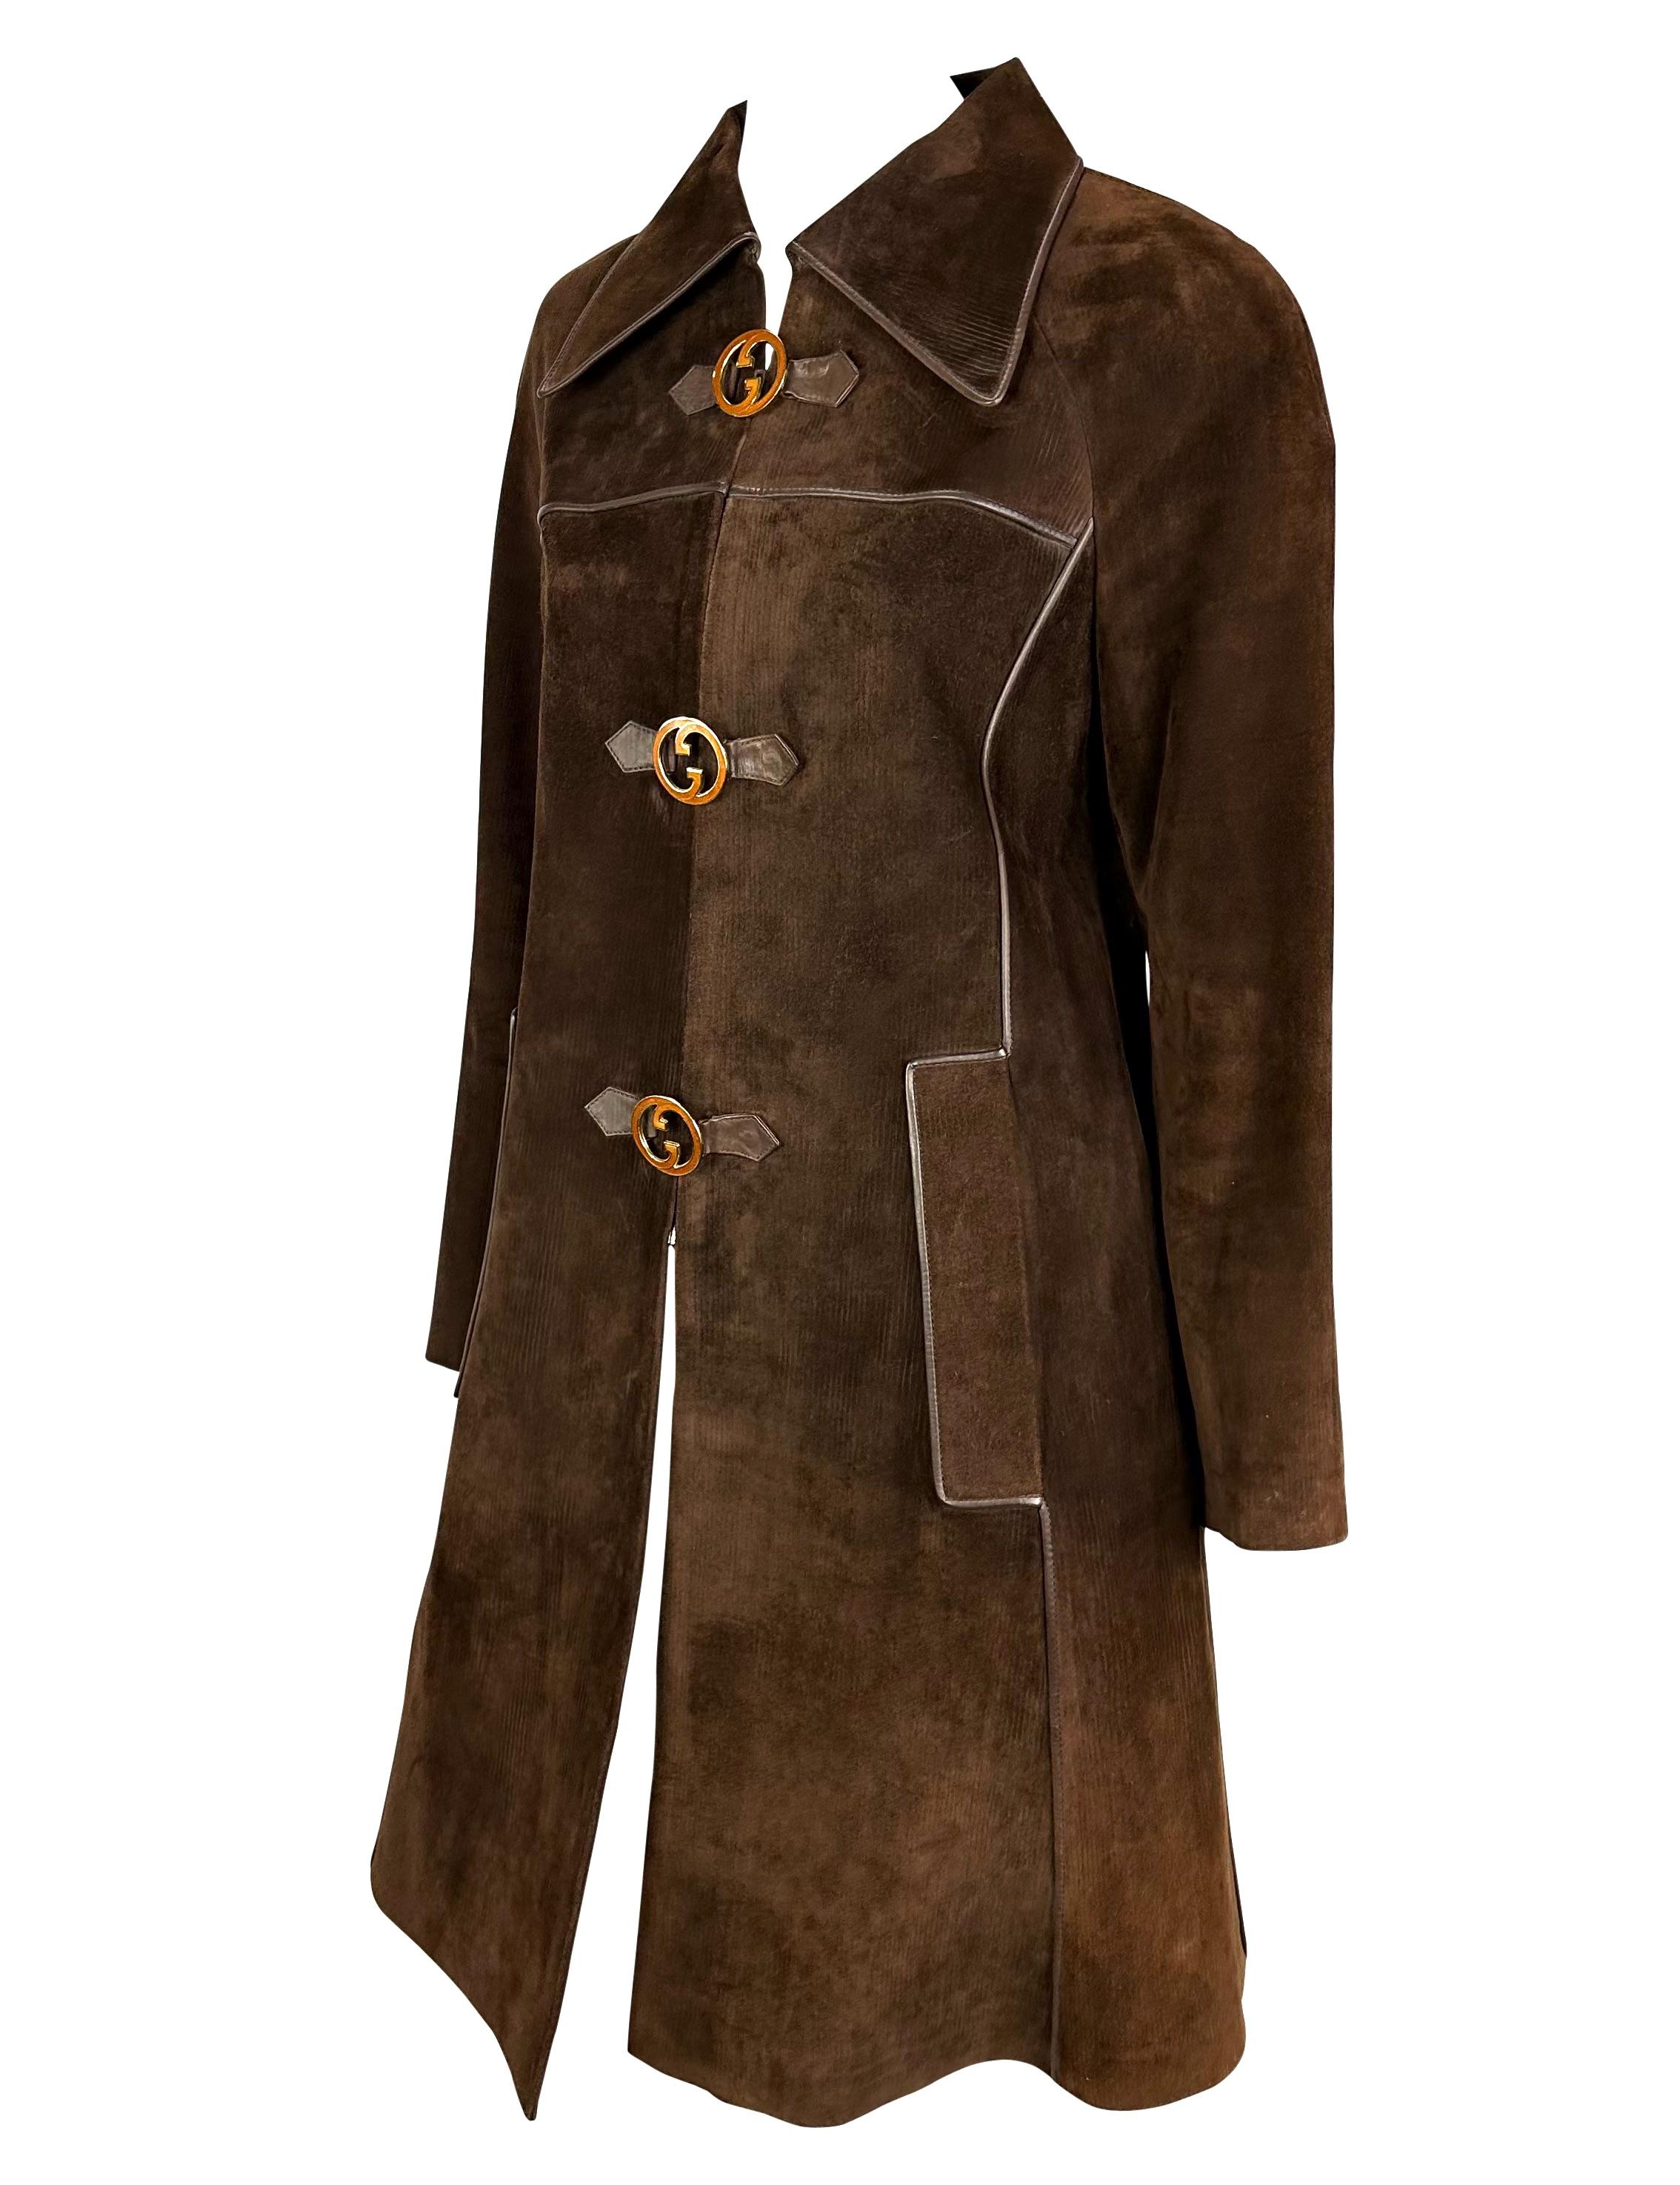 Wir präsentieren einen absolut unglaublichen gestreiften Gucci Trenchcoat aus braunem Wildleder. Dieser ultraseltene Mantel aus den 1970er Jahren ist komplett aus gemustertem braunem Wildleder gefertigt. Der Mantel ist mit Lederpaspeln und einem